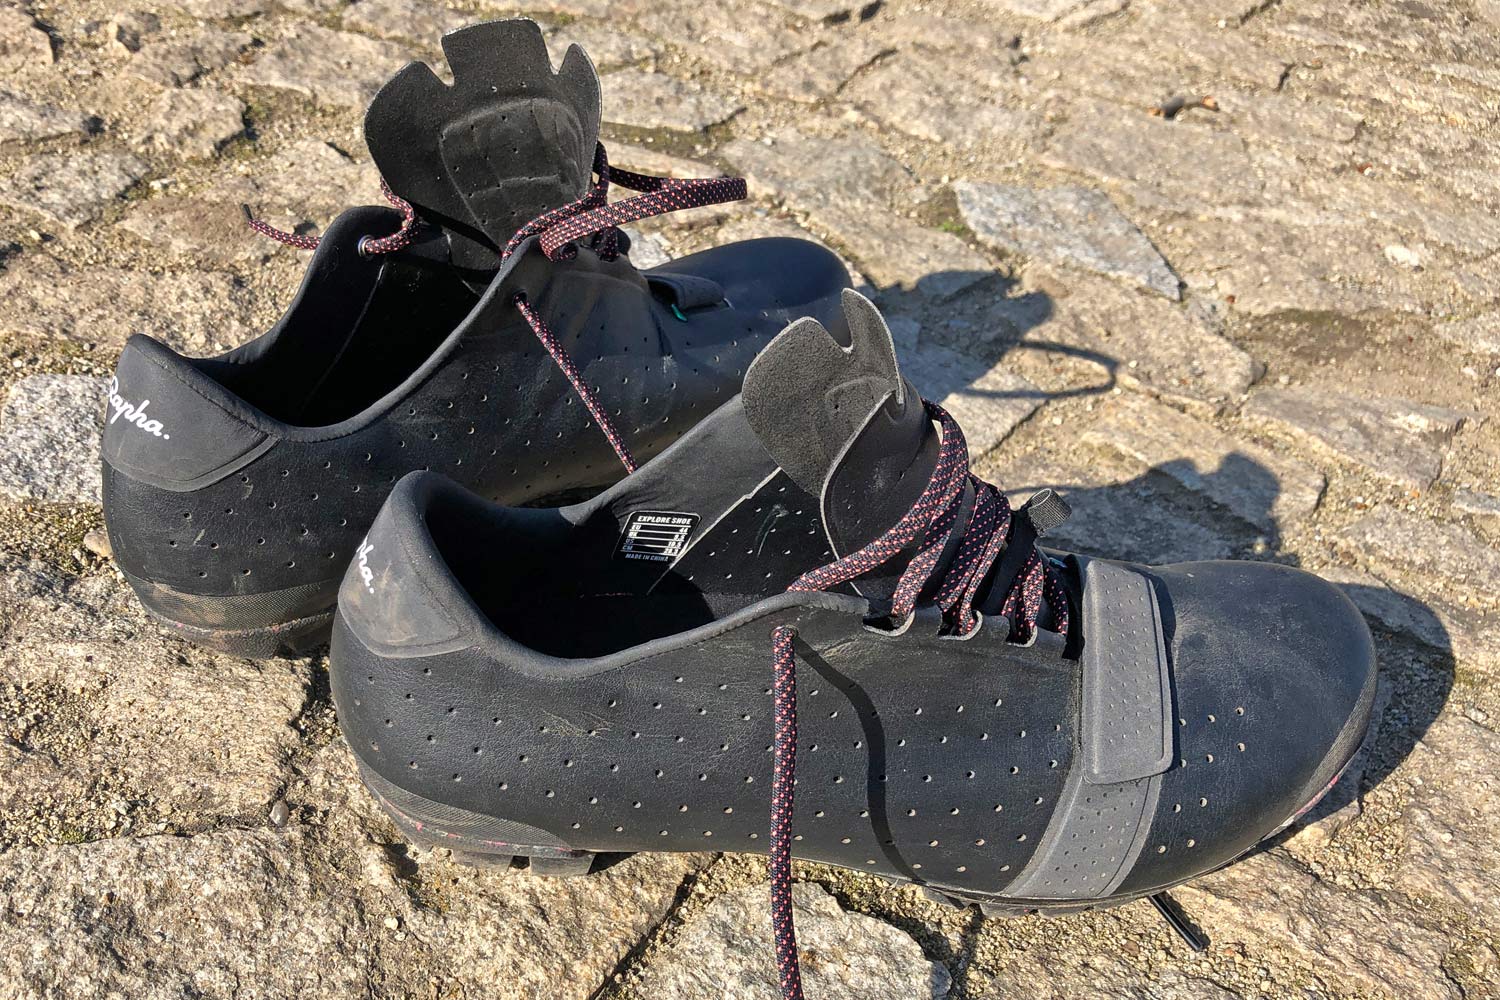 Rapha Explore shoes, carbon-soled off-road gravel adventure bike riding shoes